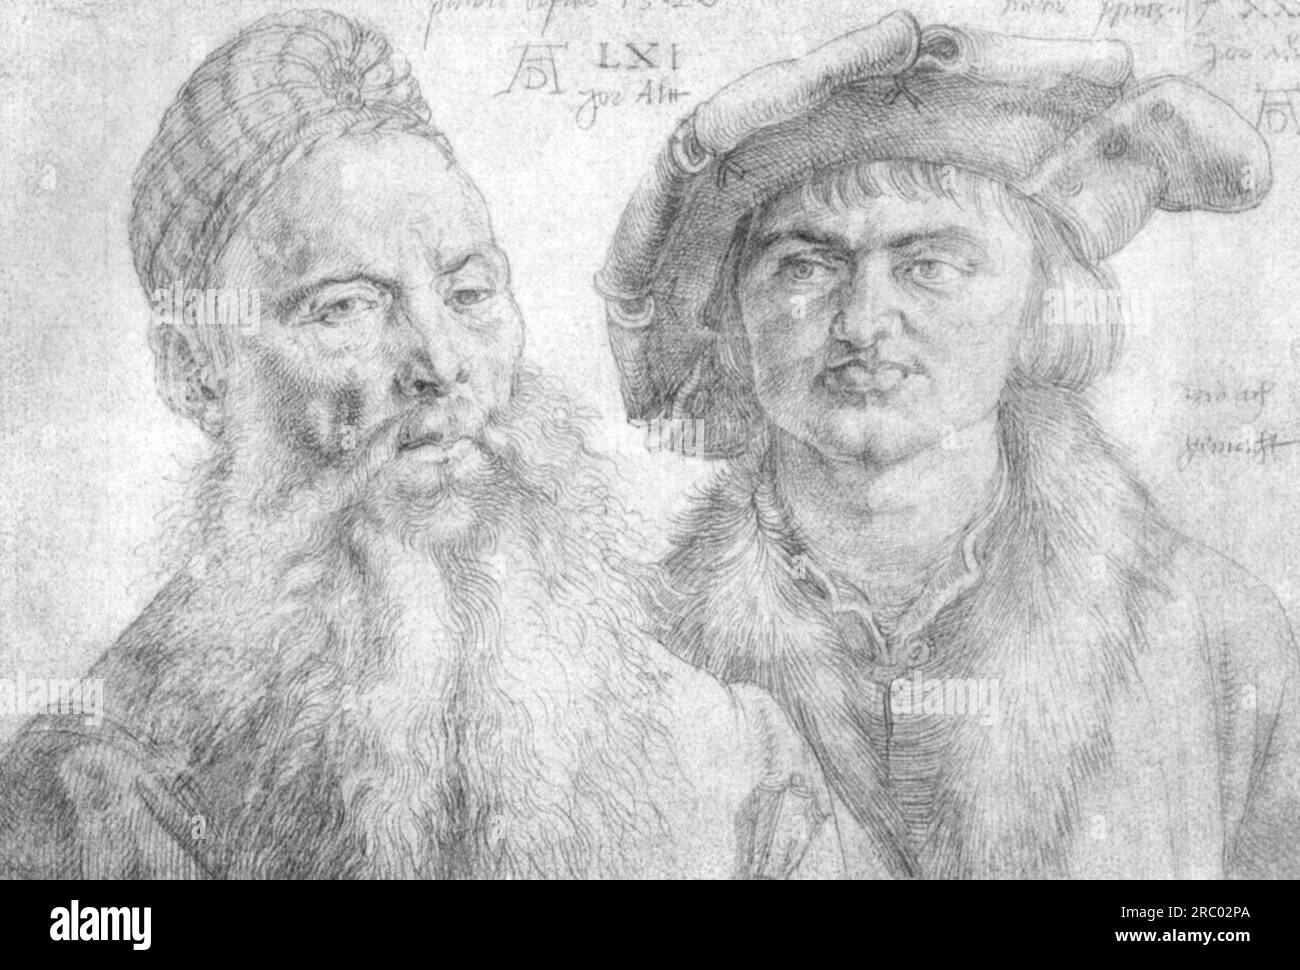 Portrait of Paul Martin and the Topler Pfinzig 1520 by Albrecht Durer Stock Photo